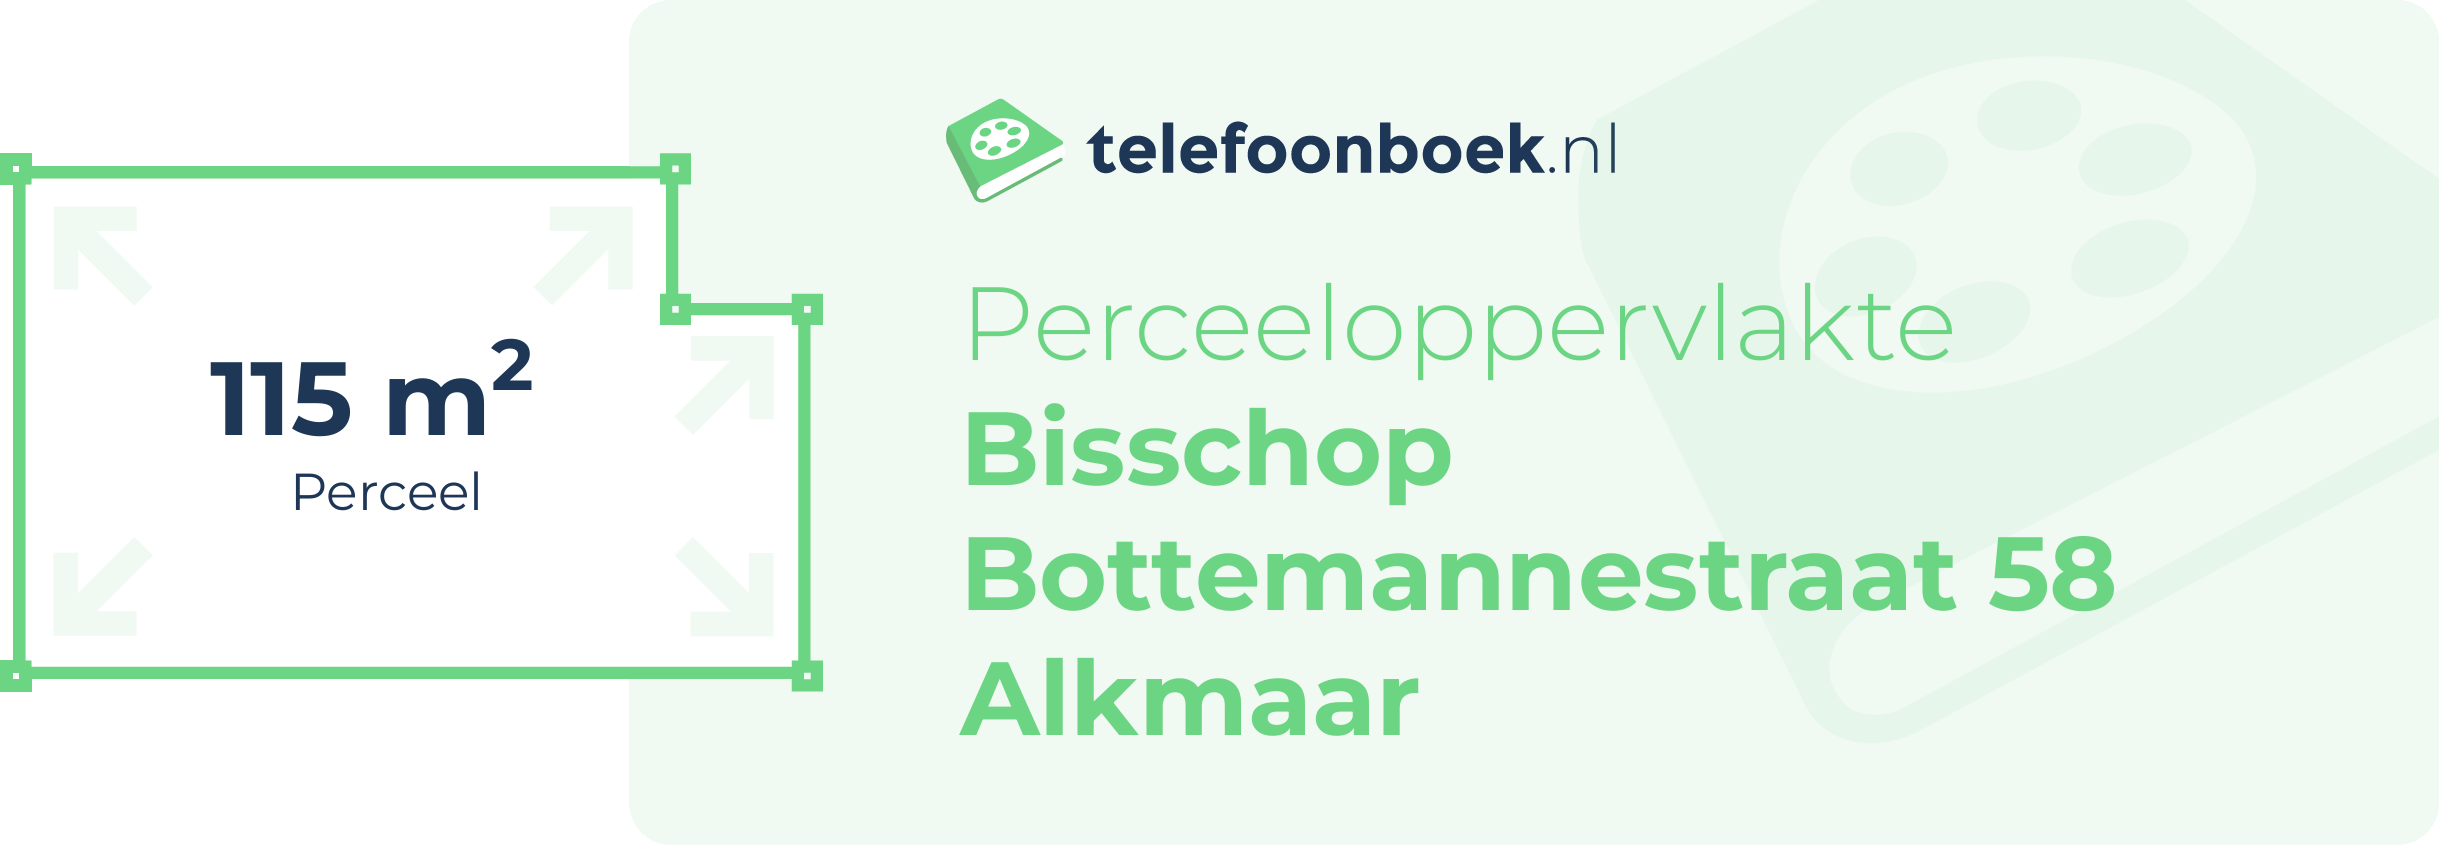 Perceeloppervlakte Bisschop Bottemannestraat 58 Alkmaar